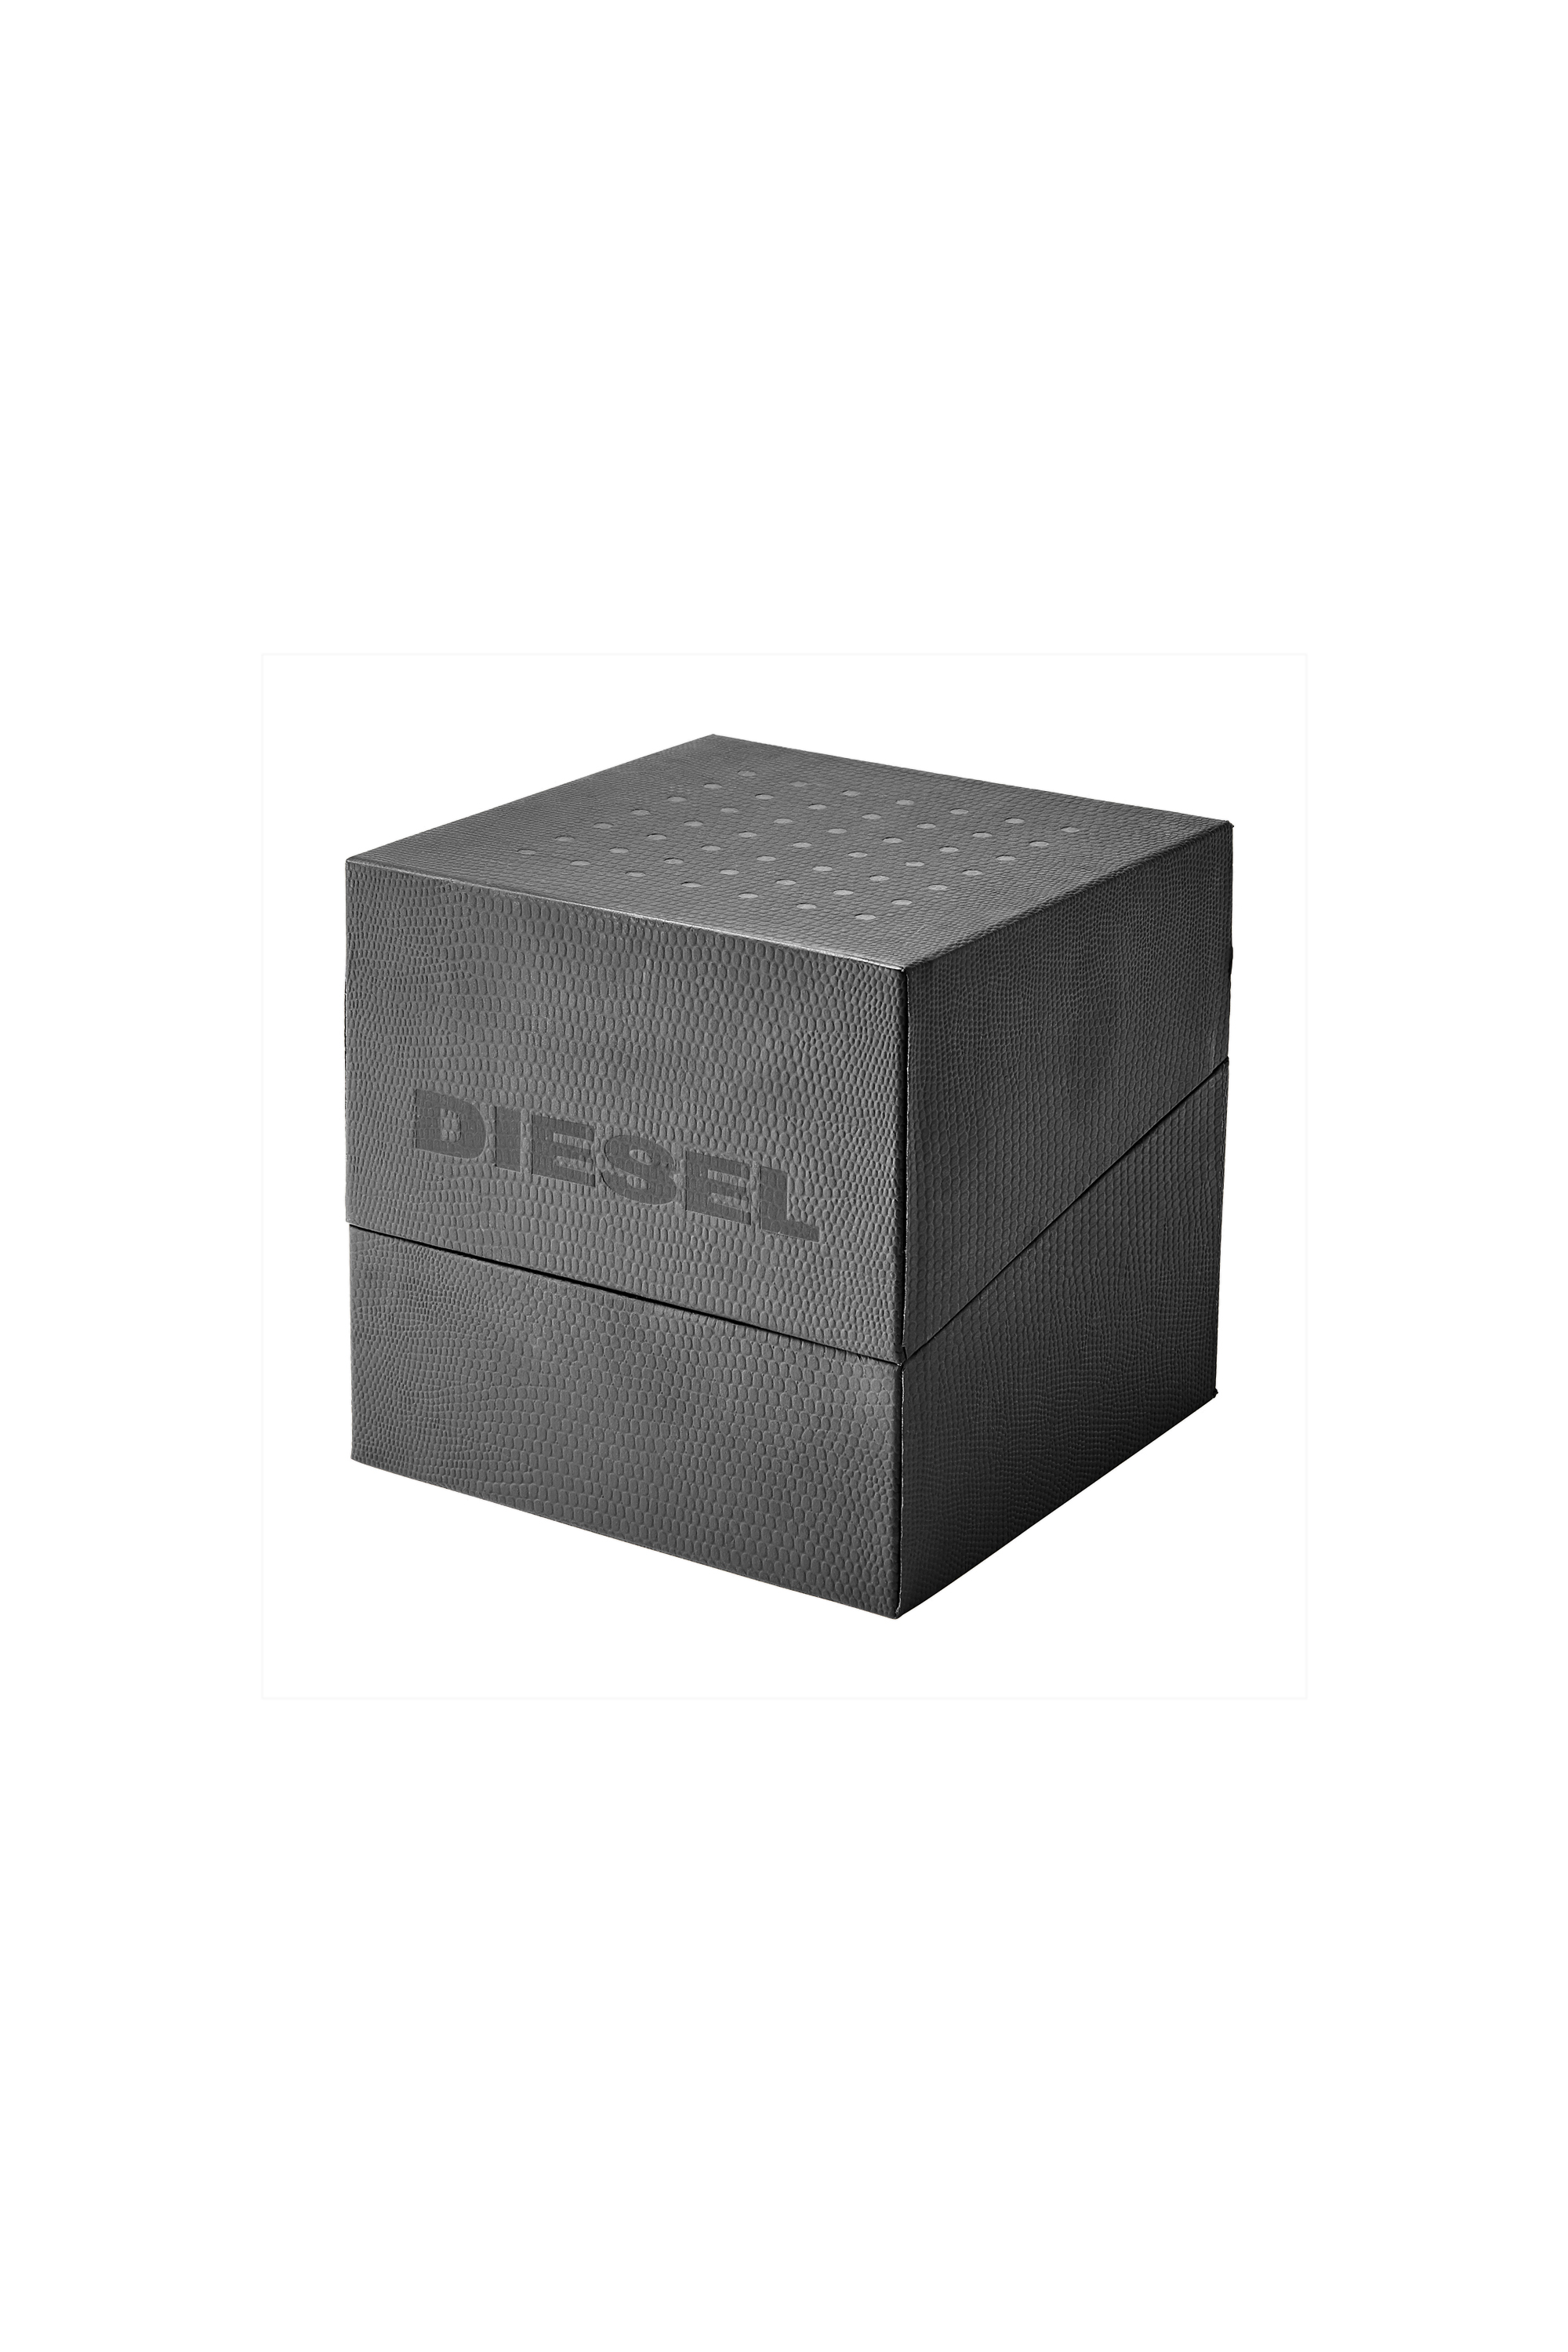 Diesel - DZ7429, グレー - Image 5